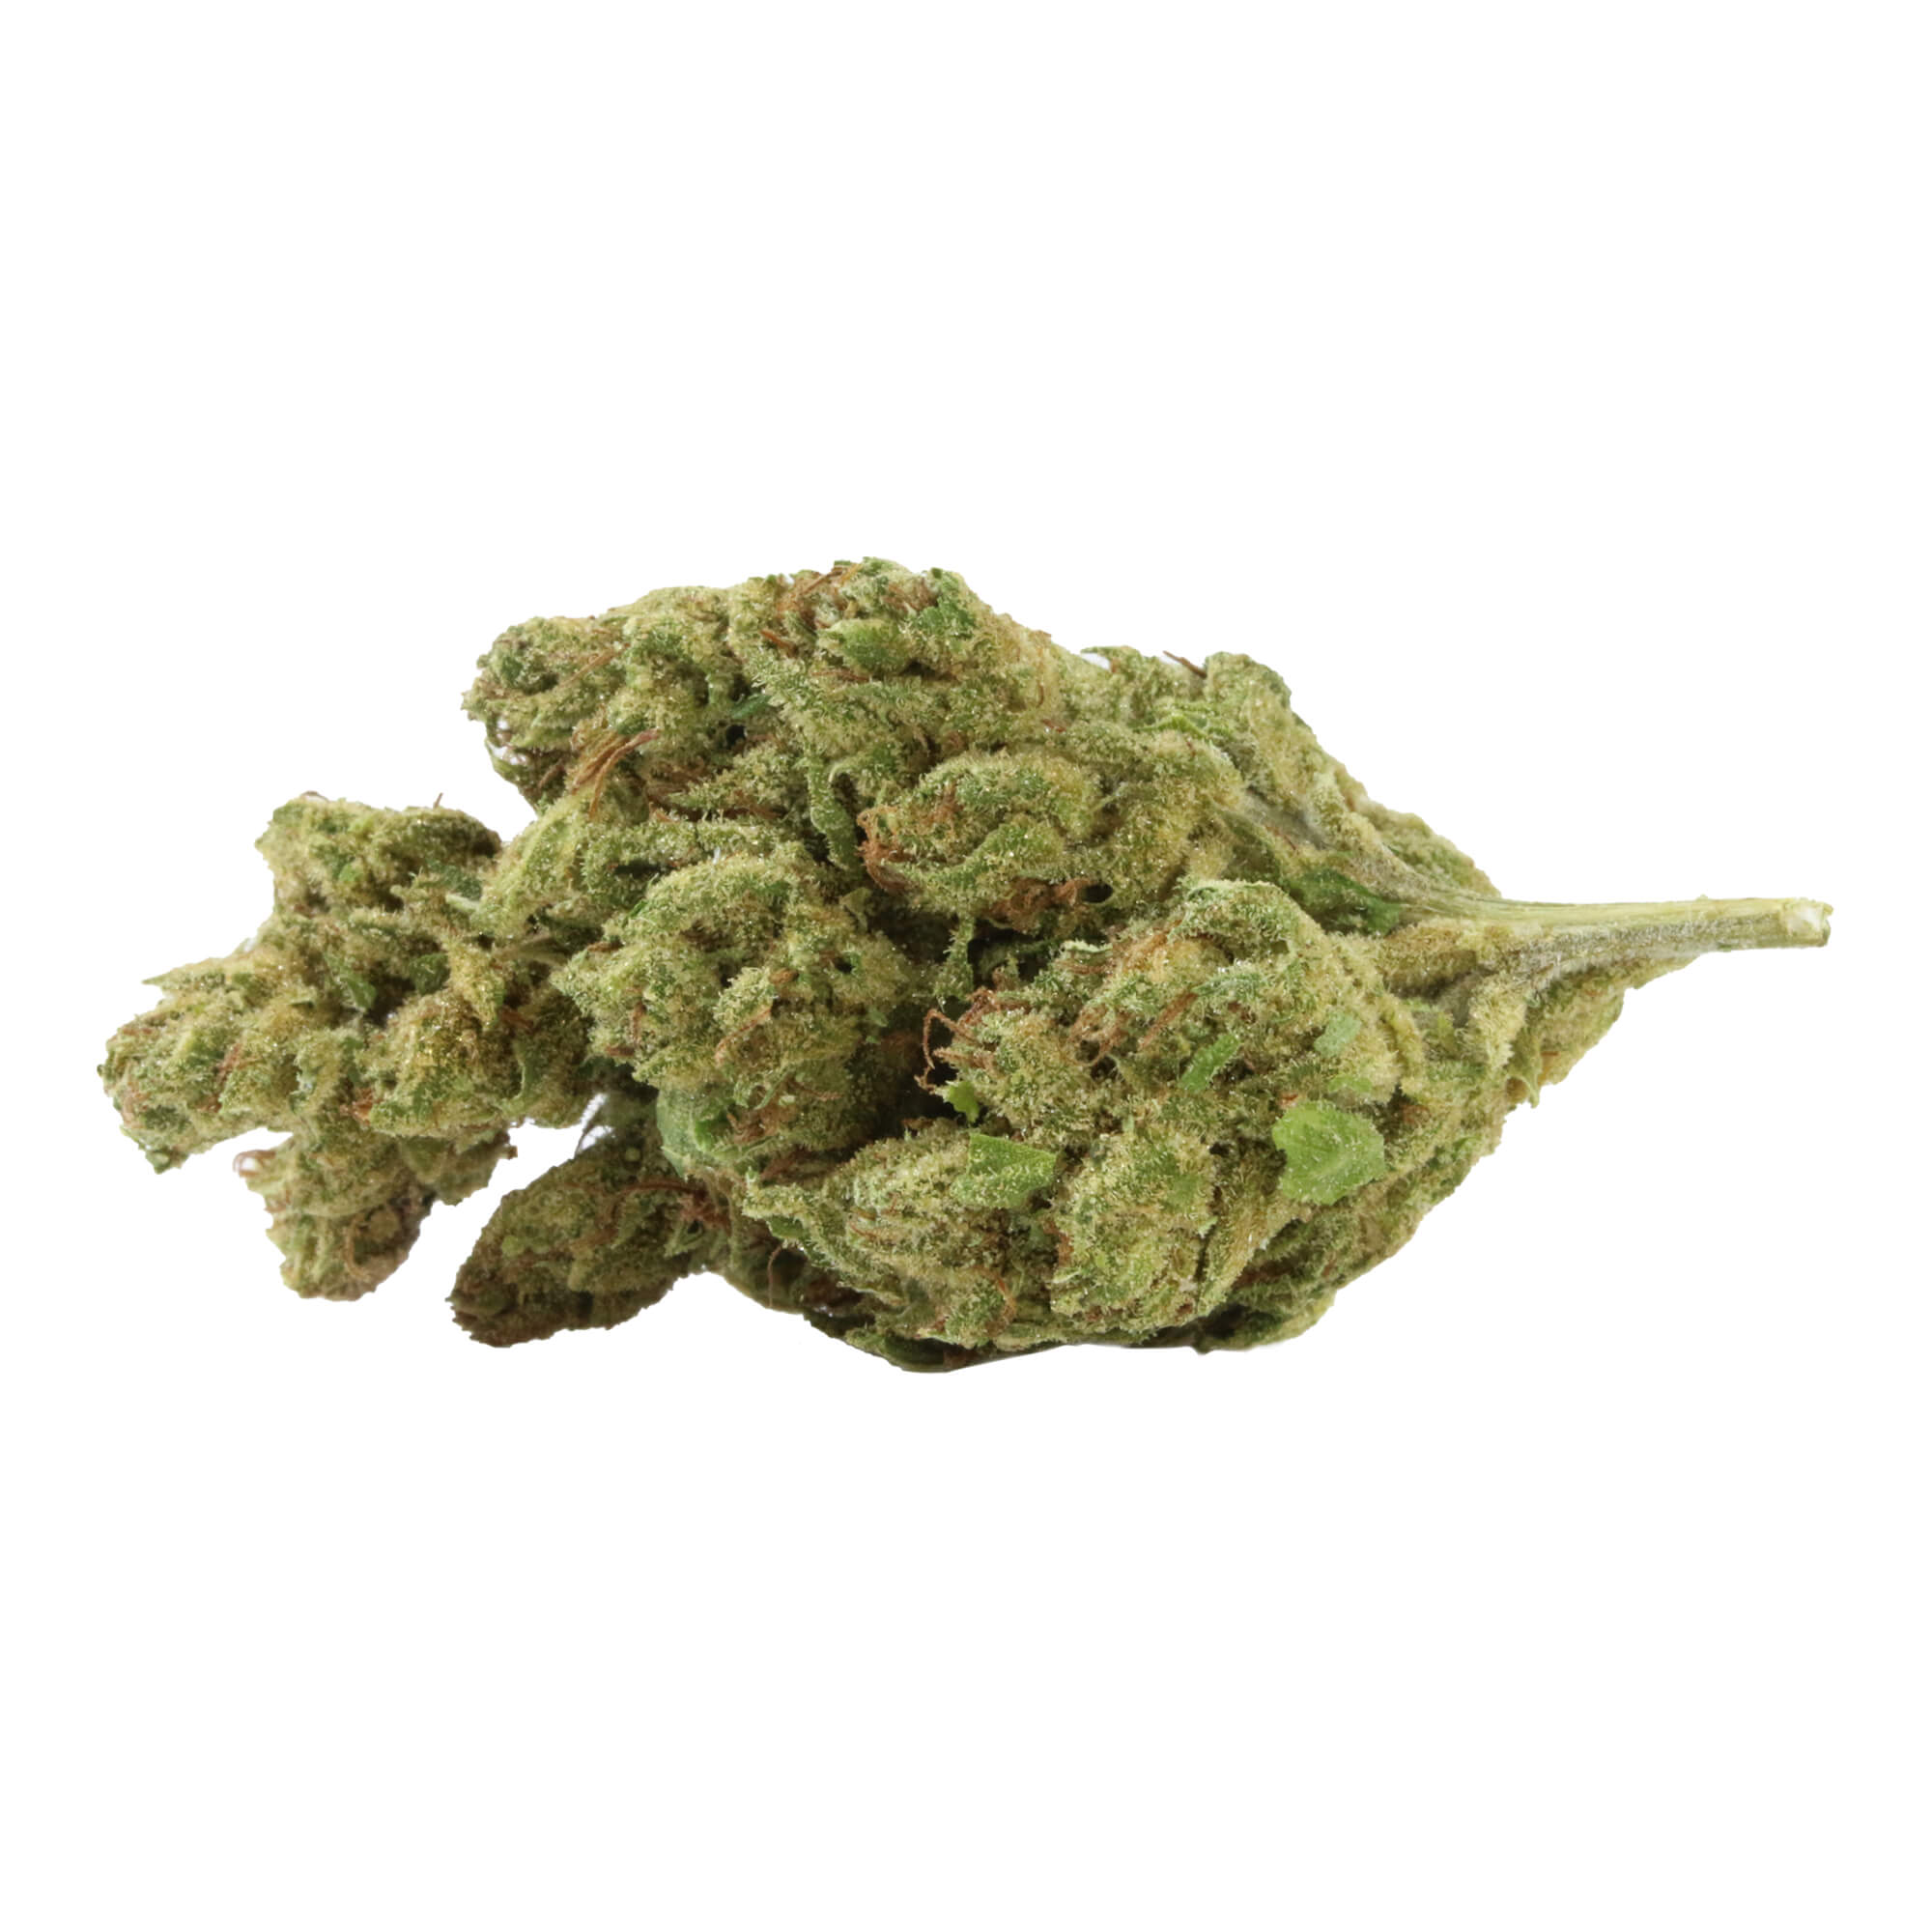 Cannabisblüten für verschiedene Anwendungsarten. Für Erwachsene.